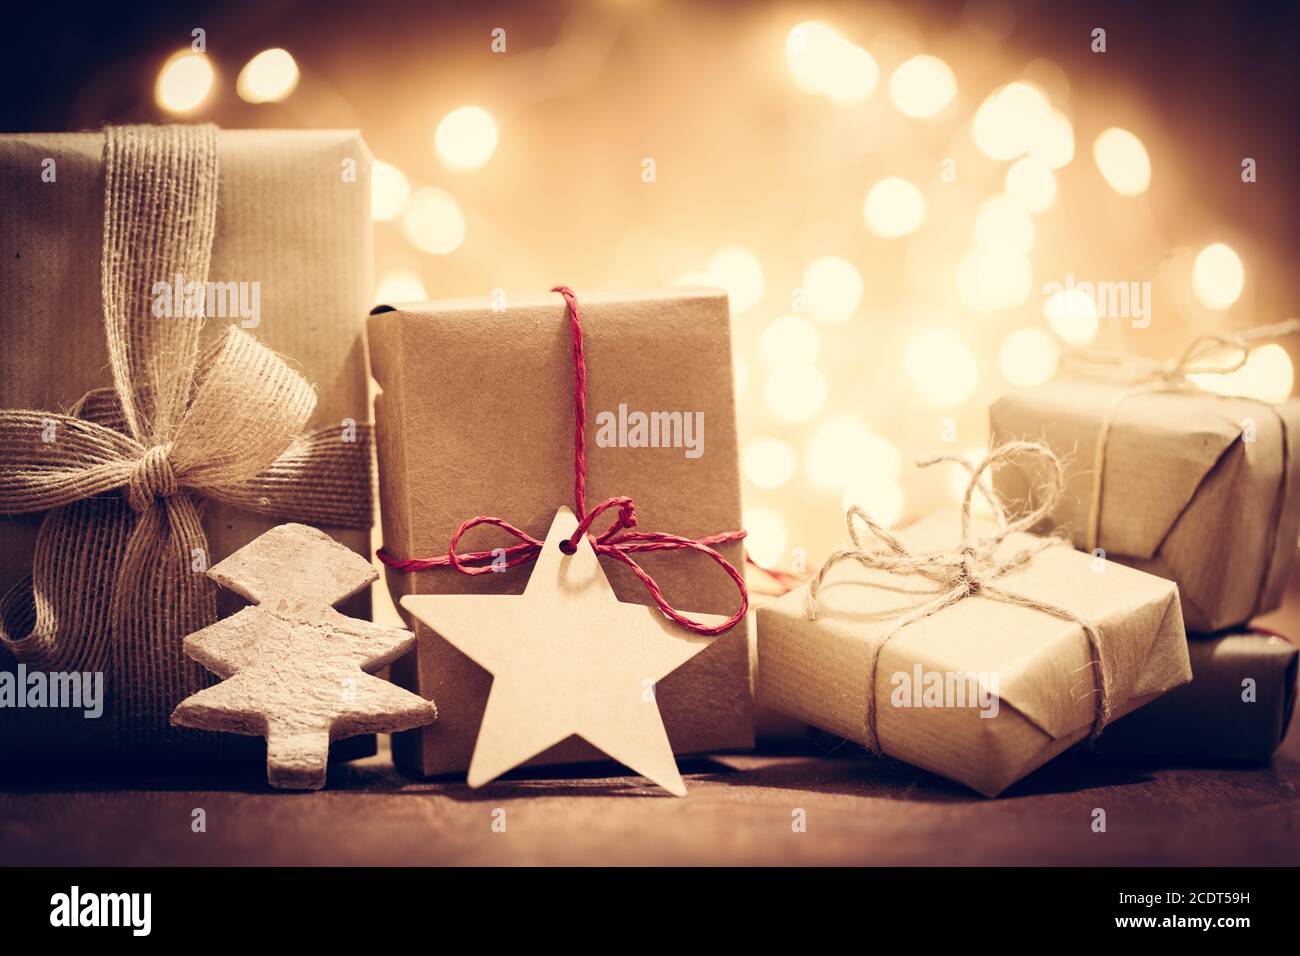 Cadeaux rustiques rétro, boîtes cadeau sur fond pailleté. Noël Banque D'Images